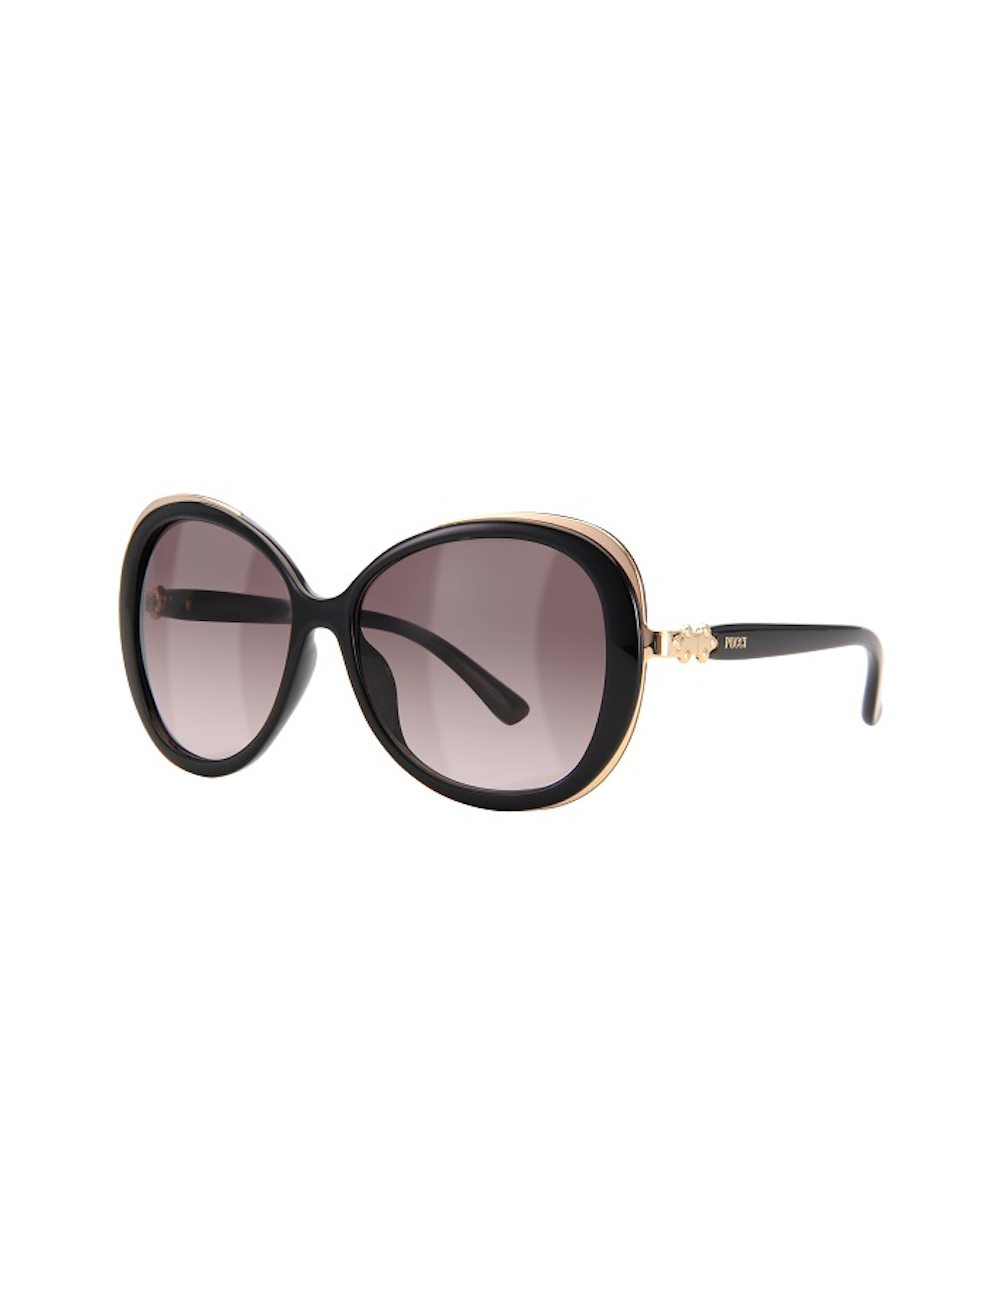 Emilio Pucci EP727S 001 sunglasses for women – Ottica Mauro